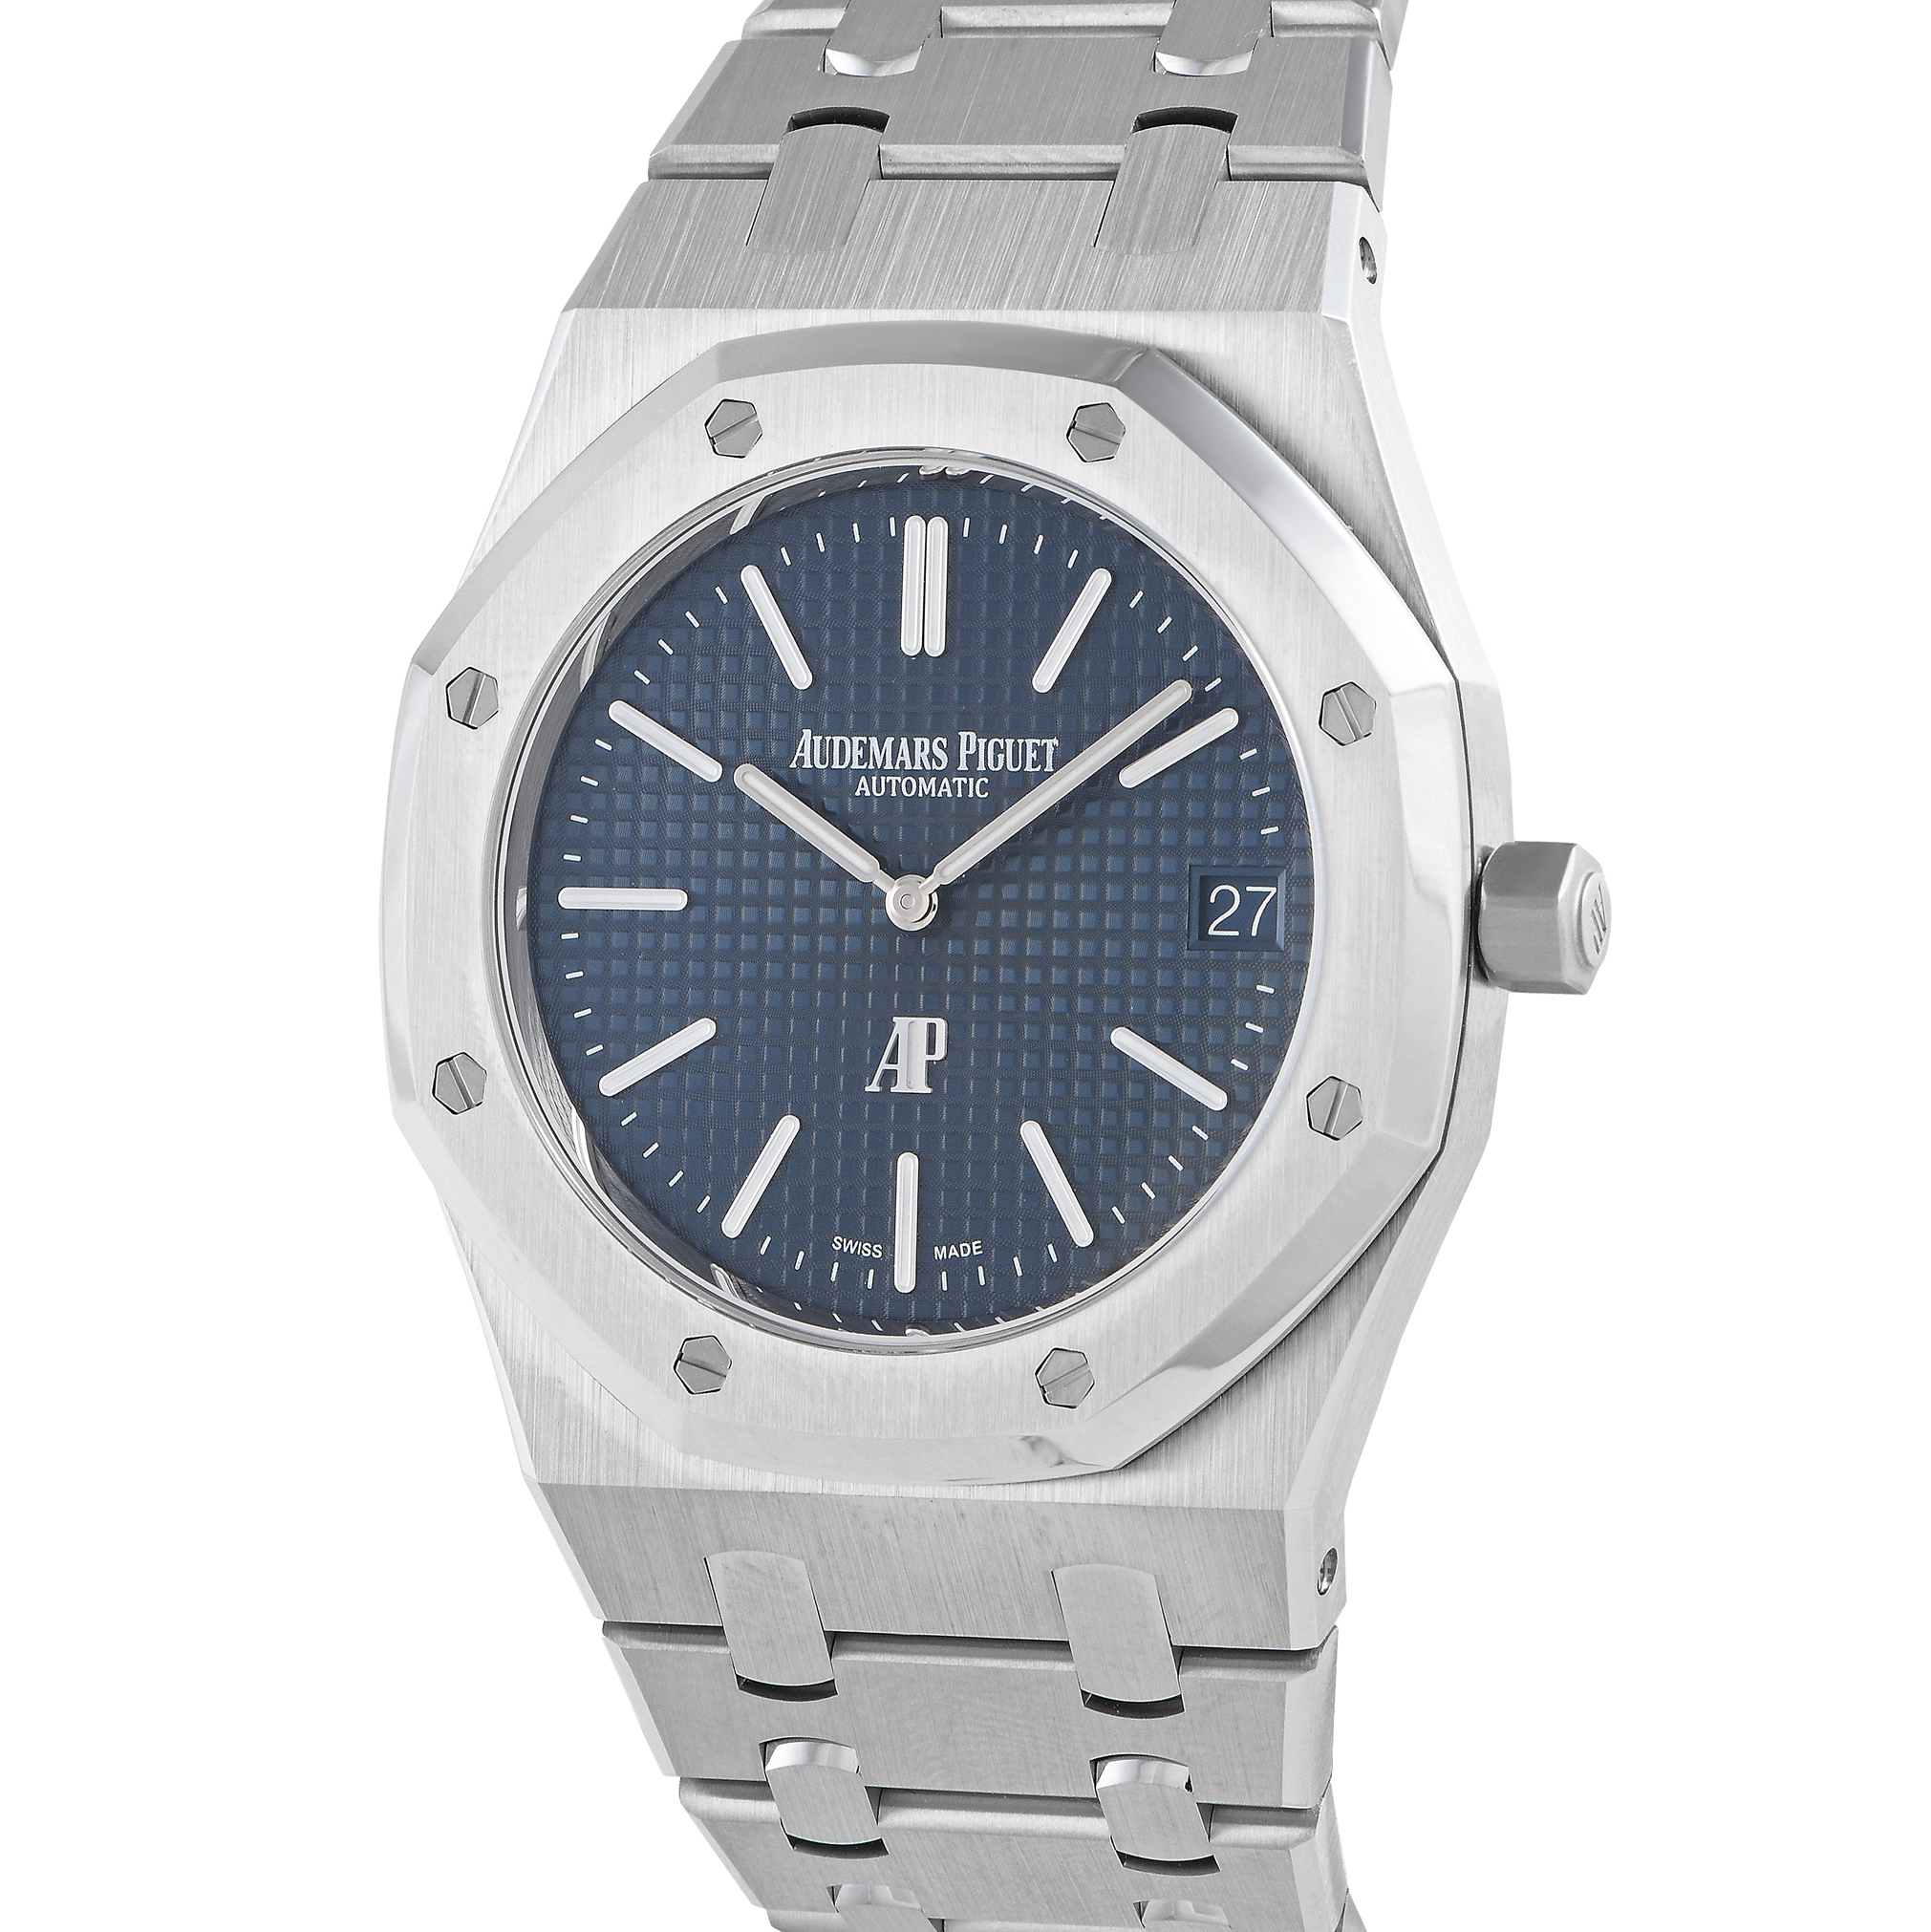 Audemars Piguet Royal Oak Jumbo Extra-Thin Watch 16202ST.OO.1240ST.02